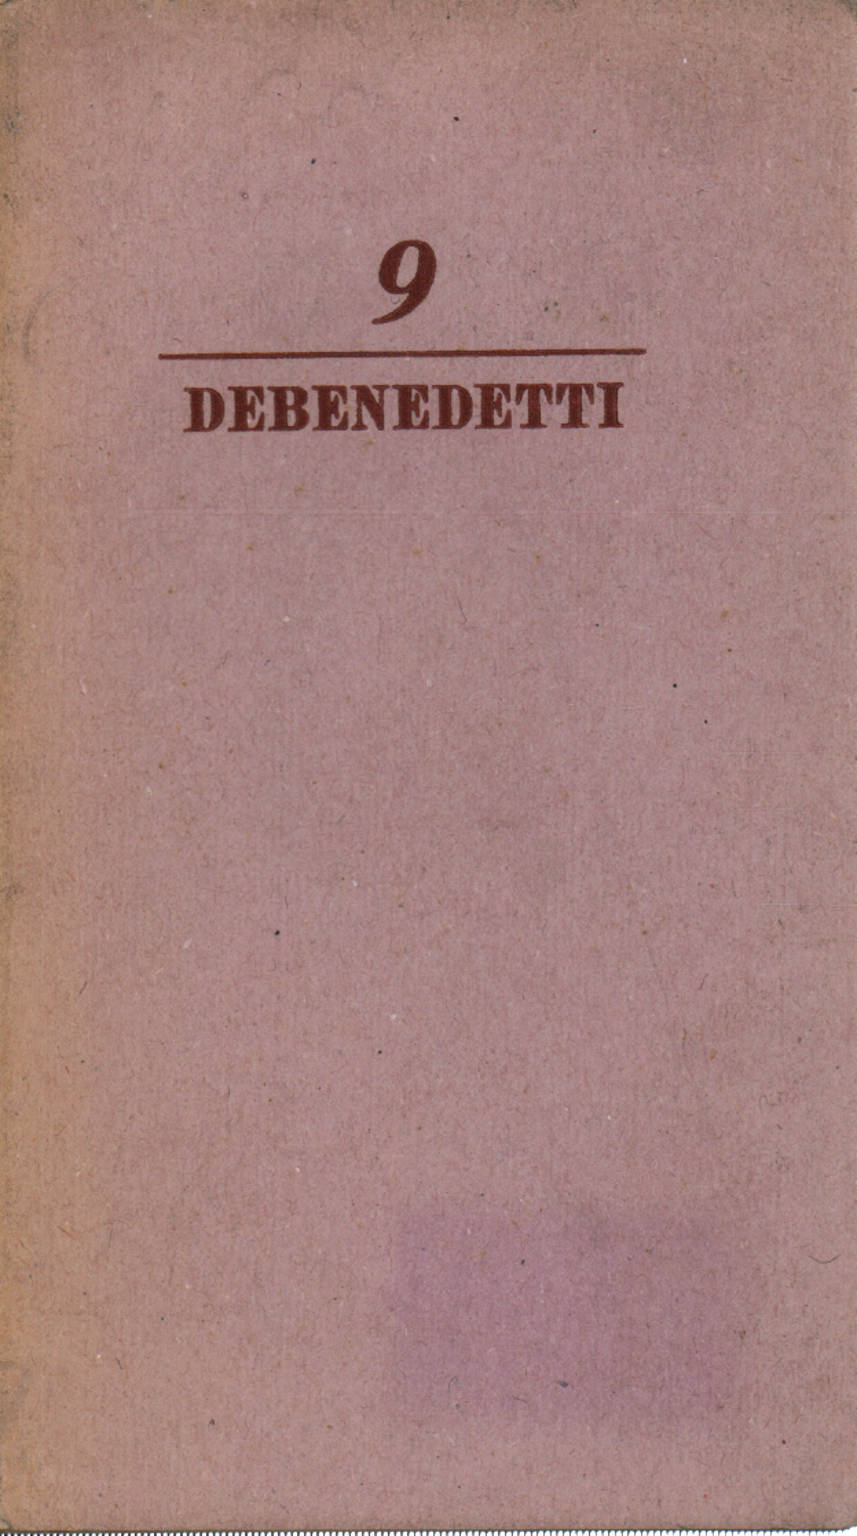 16 octobre 1943, Giacomo Debenedetti